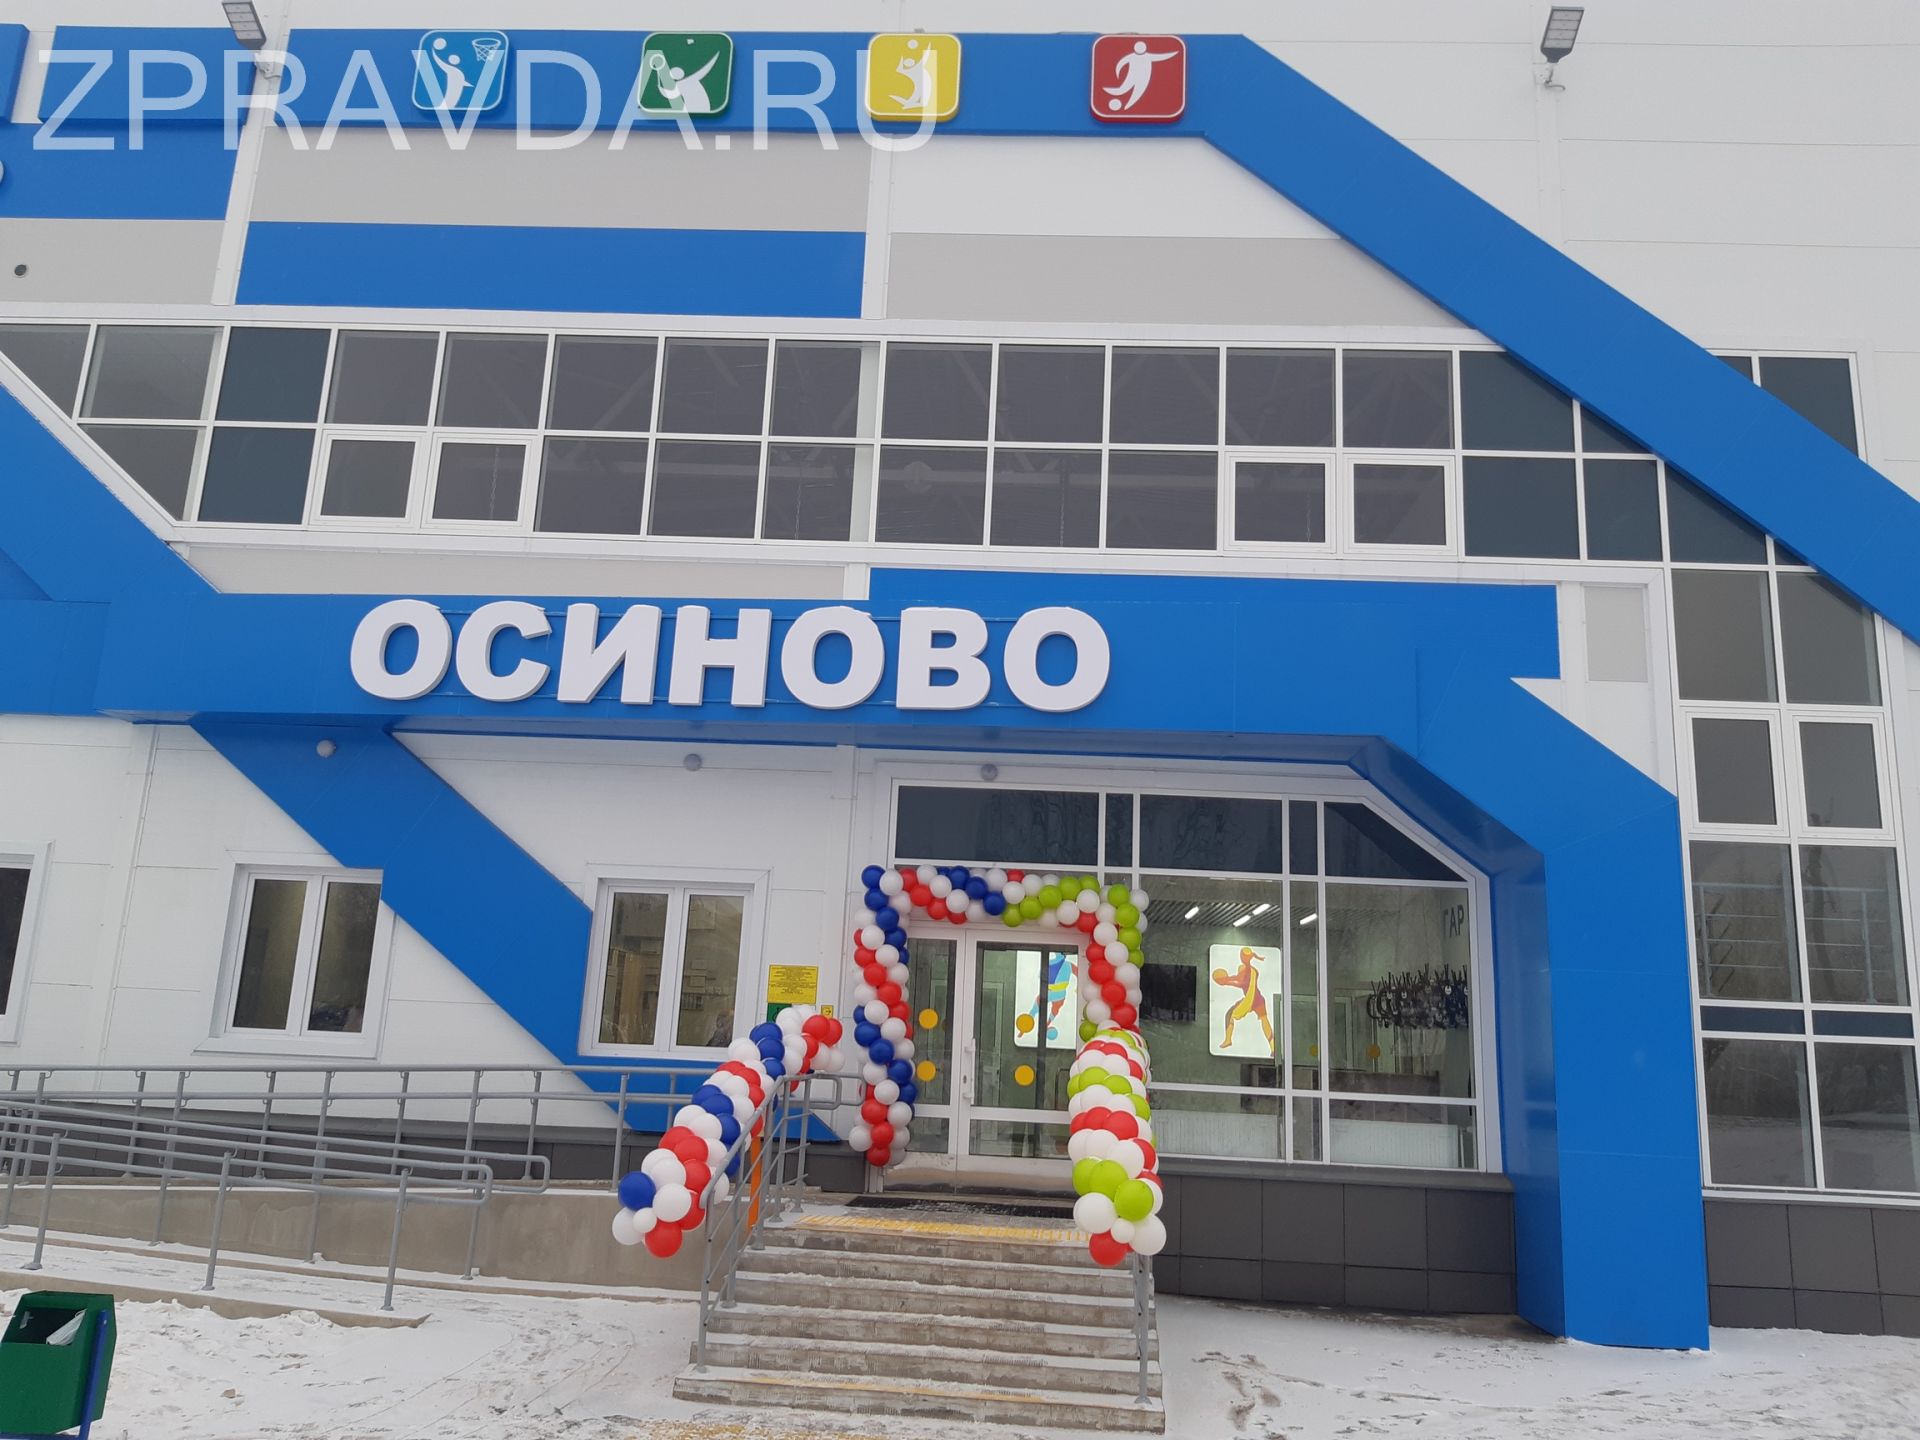 В селе Осиново Зеленодольского района торжественно открыли универсальный спортивный зал